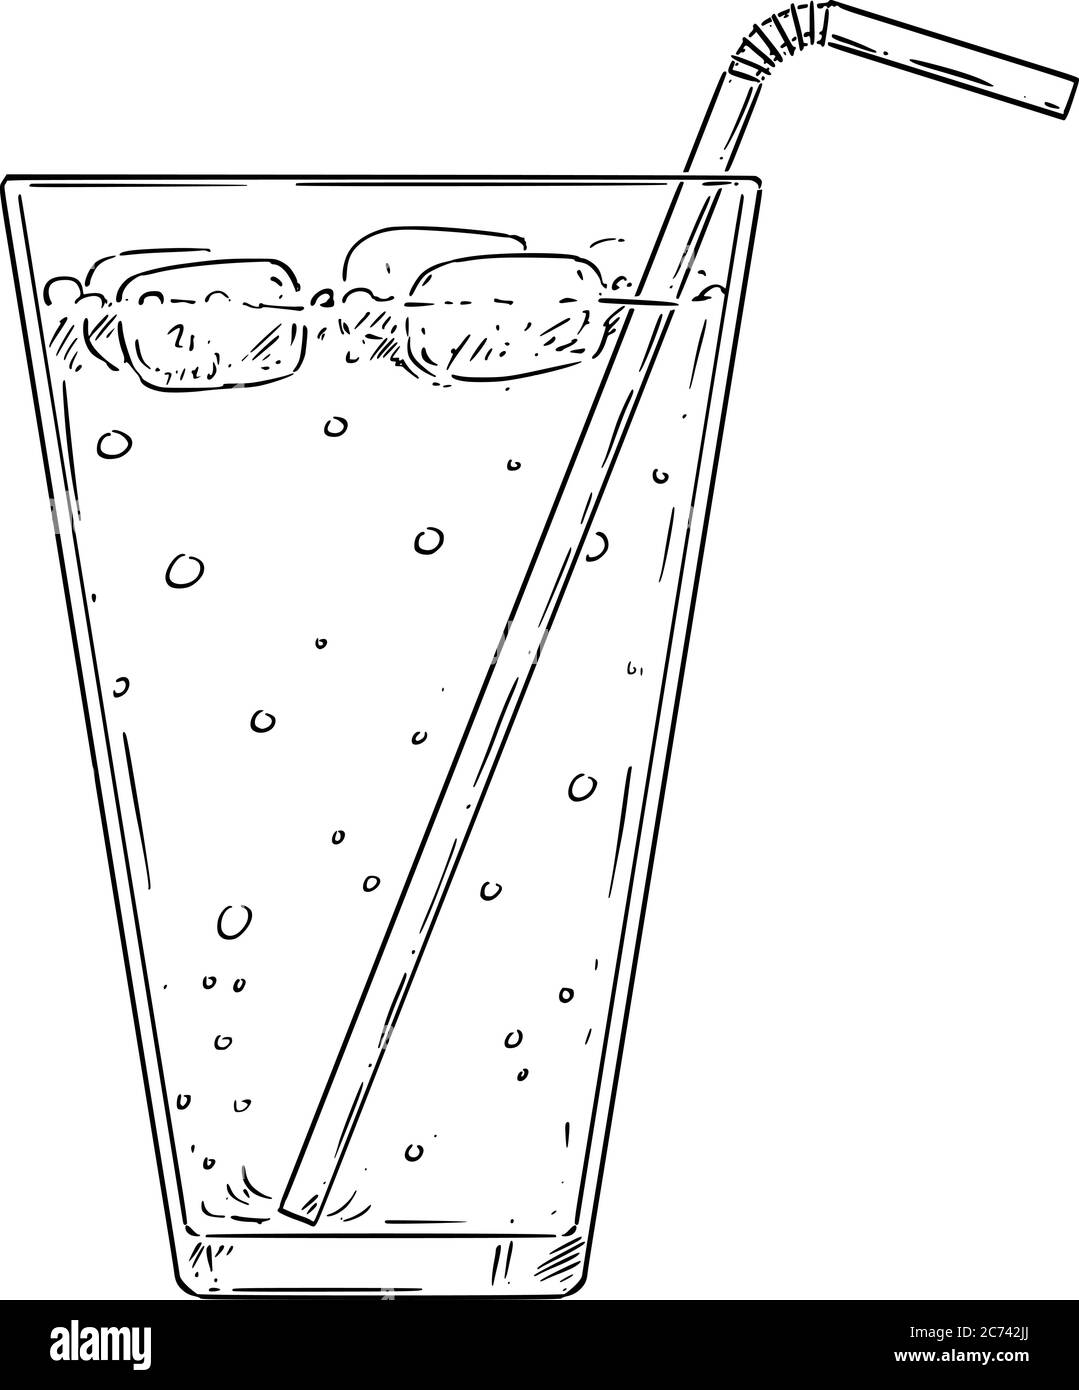 Dessin de dessin de dessin de dessin animé vectoriel de limonade froide, cocktail ou boisson avec de la paille et de la glace. Illustration de Vecteur